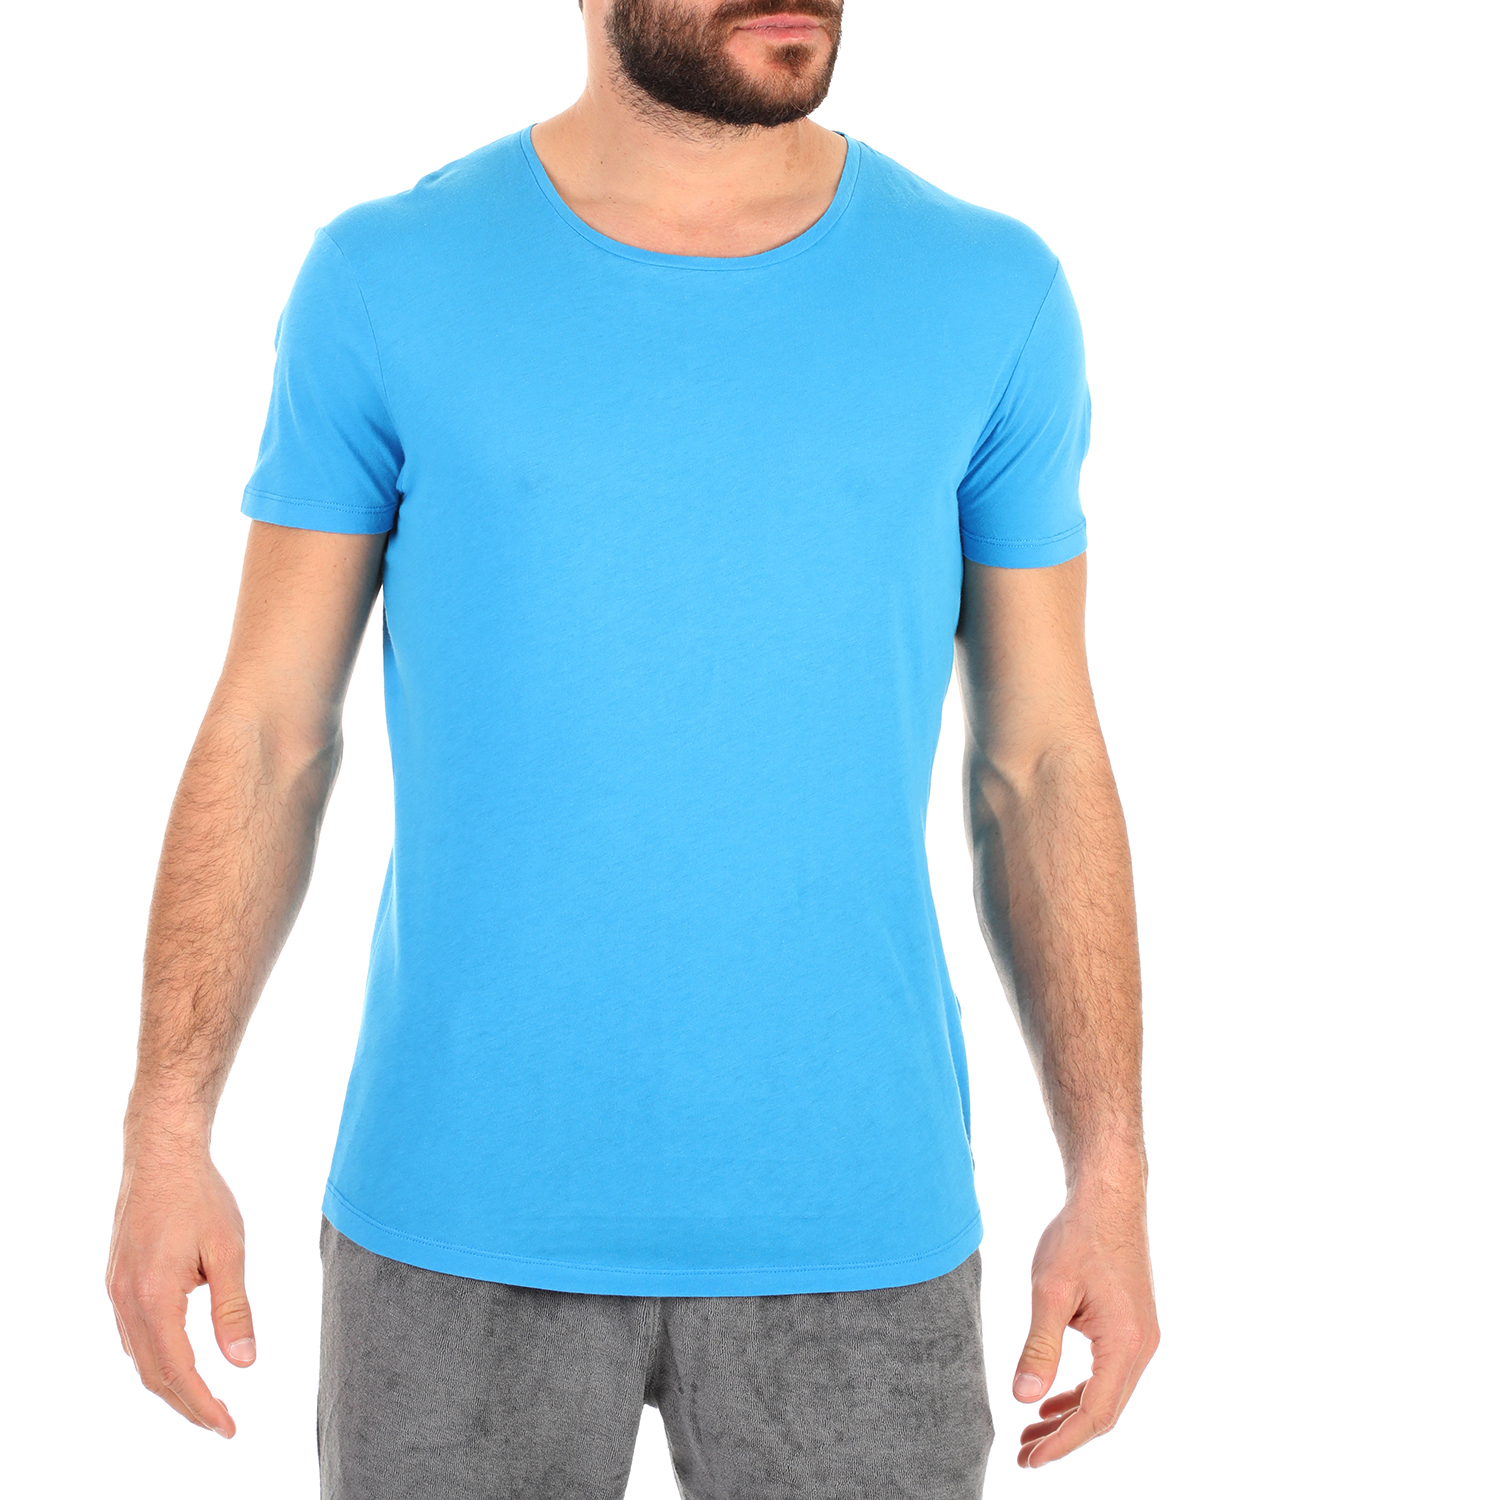 Ανδρικά/Ρούχα/Μπλούζες/Κοντομάνικες ORLEBAR BROWN - Ανδρική μπλούζα ORLEBAR BROWN μπλε